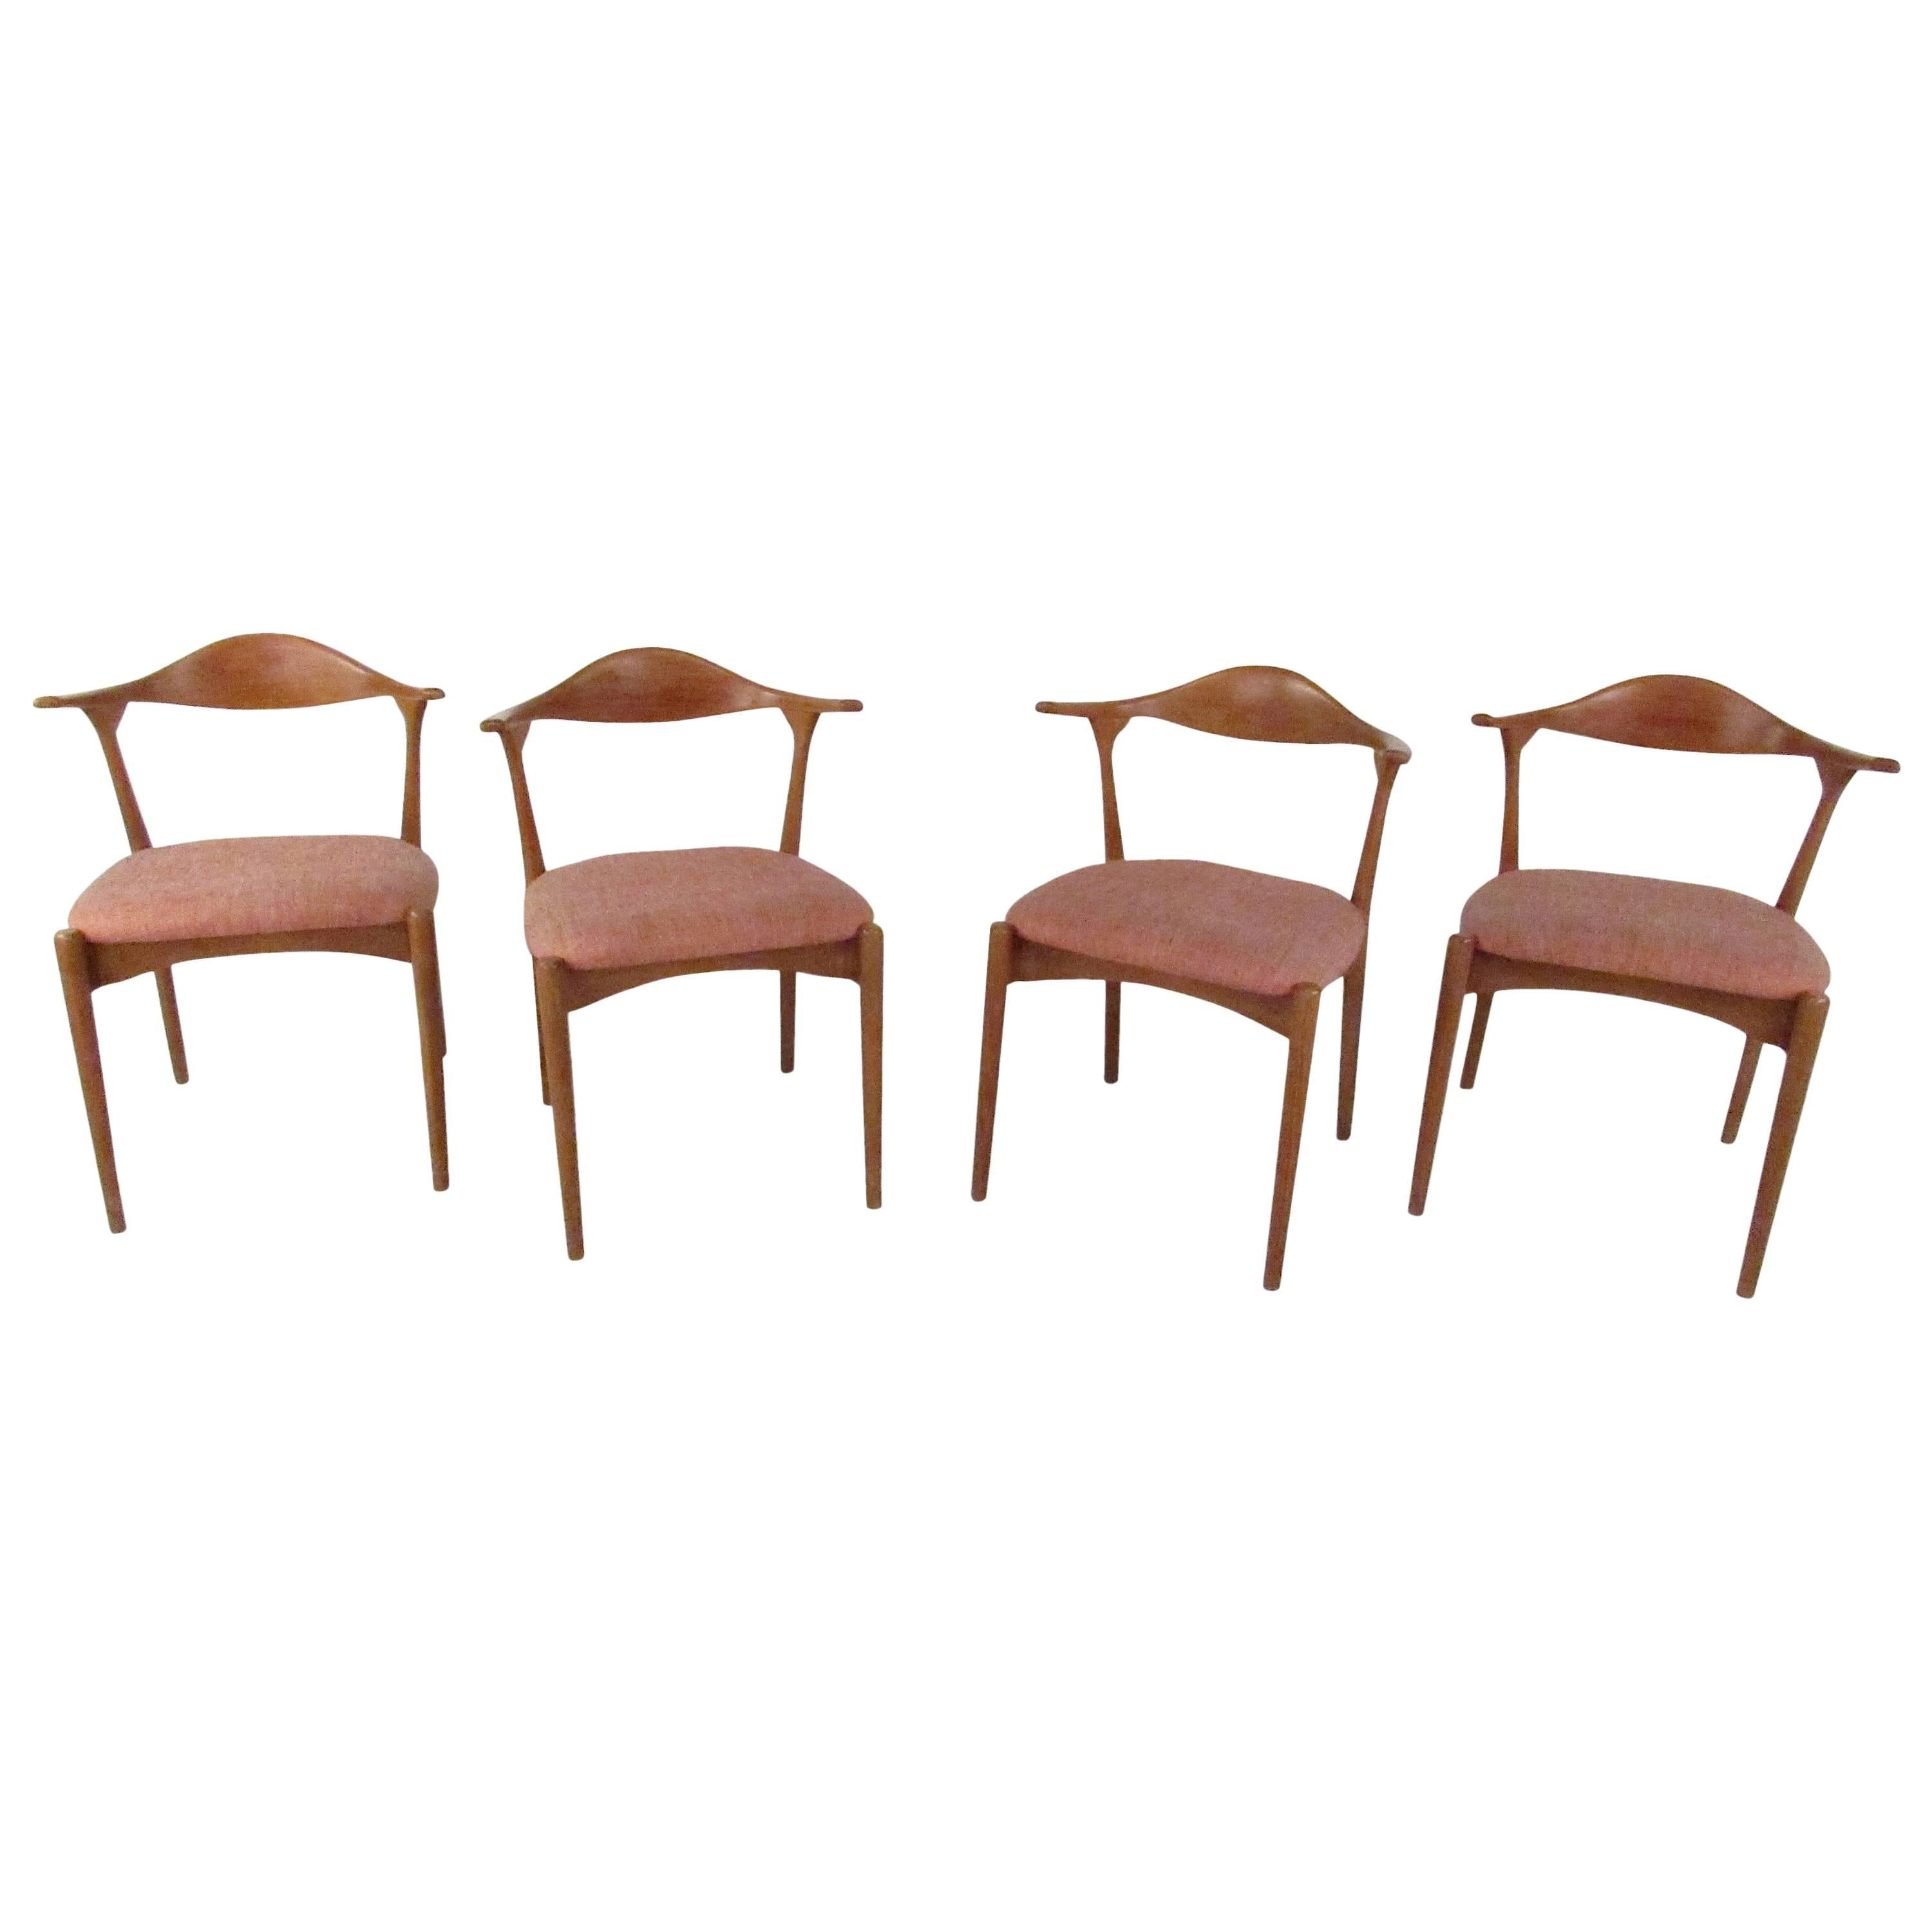 Four "Aristo" Chairs by Folke Sundberg for Bröderna Edmans, Sweden